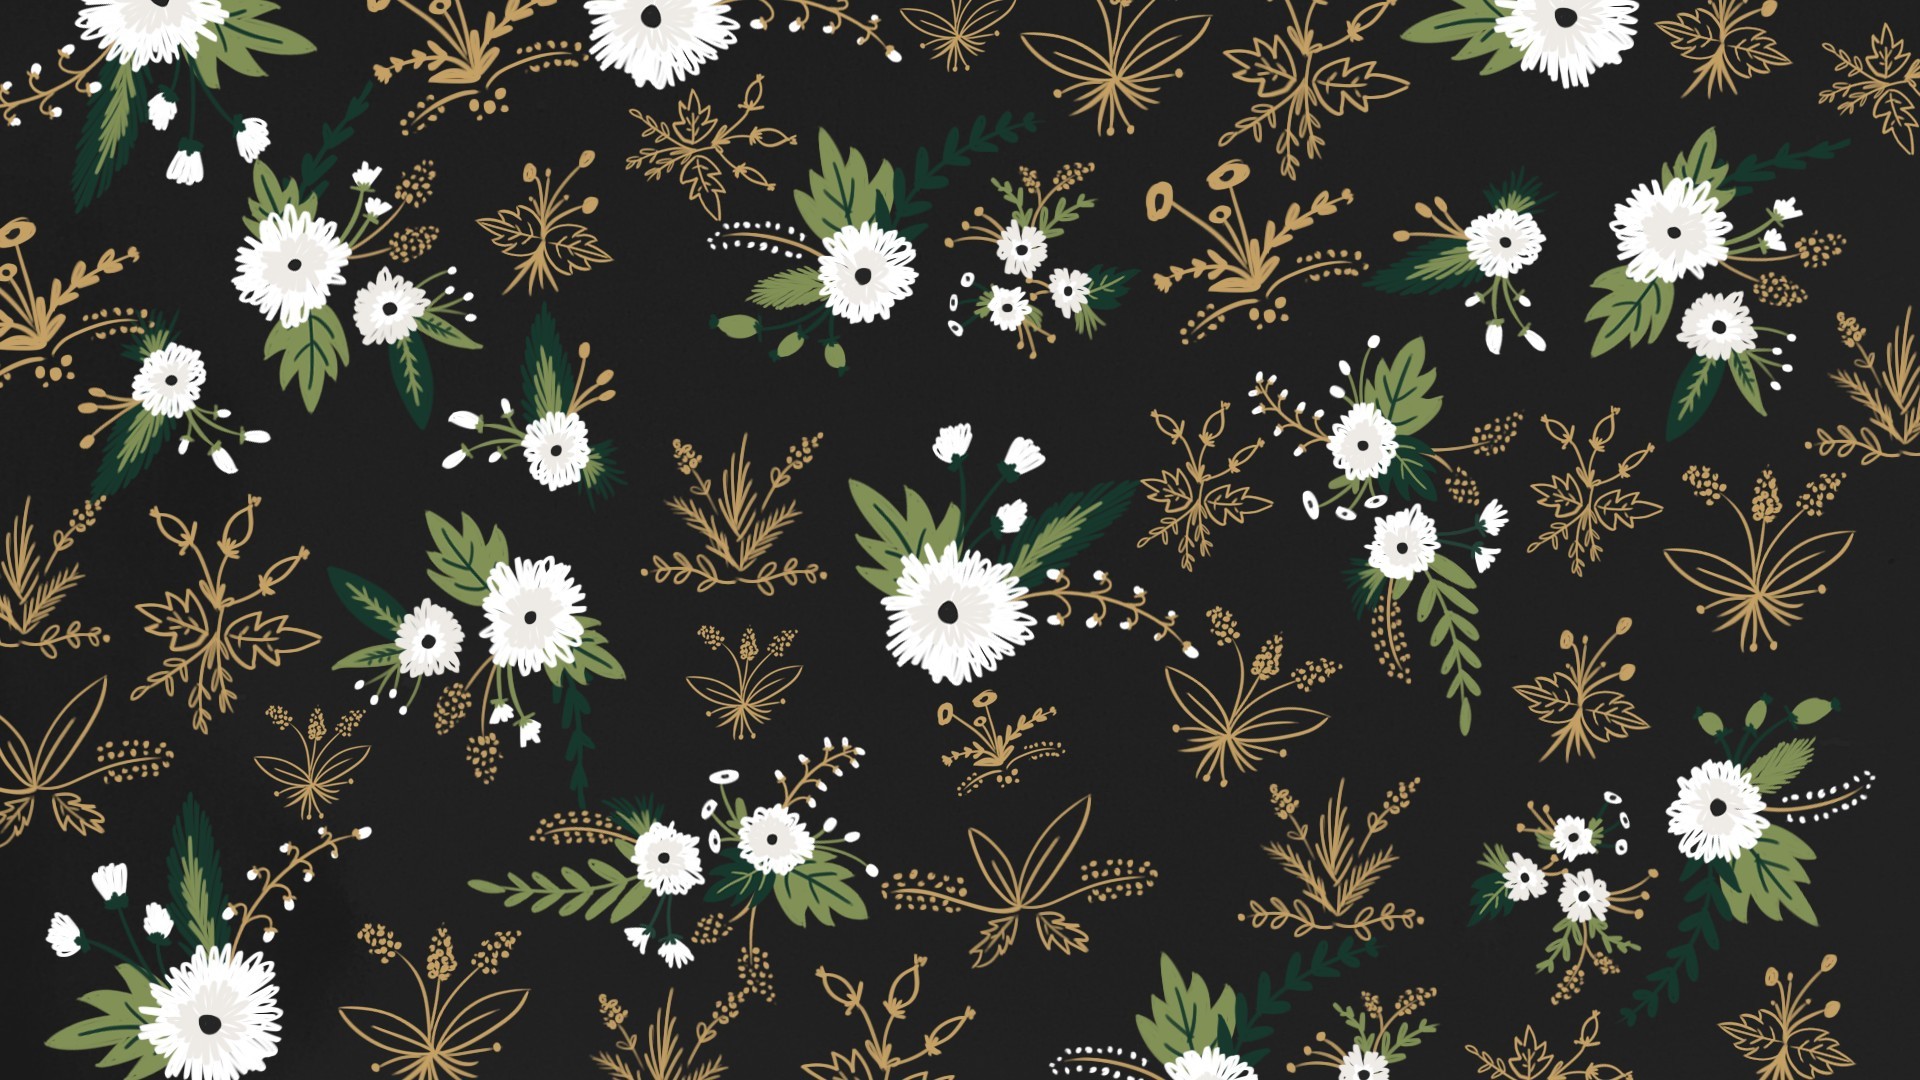 1920x1080  desktop_positive_pattern_by_cocorie-d85k113.png (1920Ã—1080) |  Pattern | Pinterest | Floral patterns, Desktop wallpapers and Flower